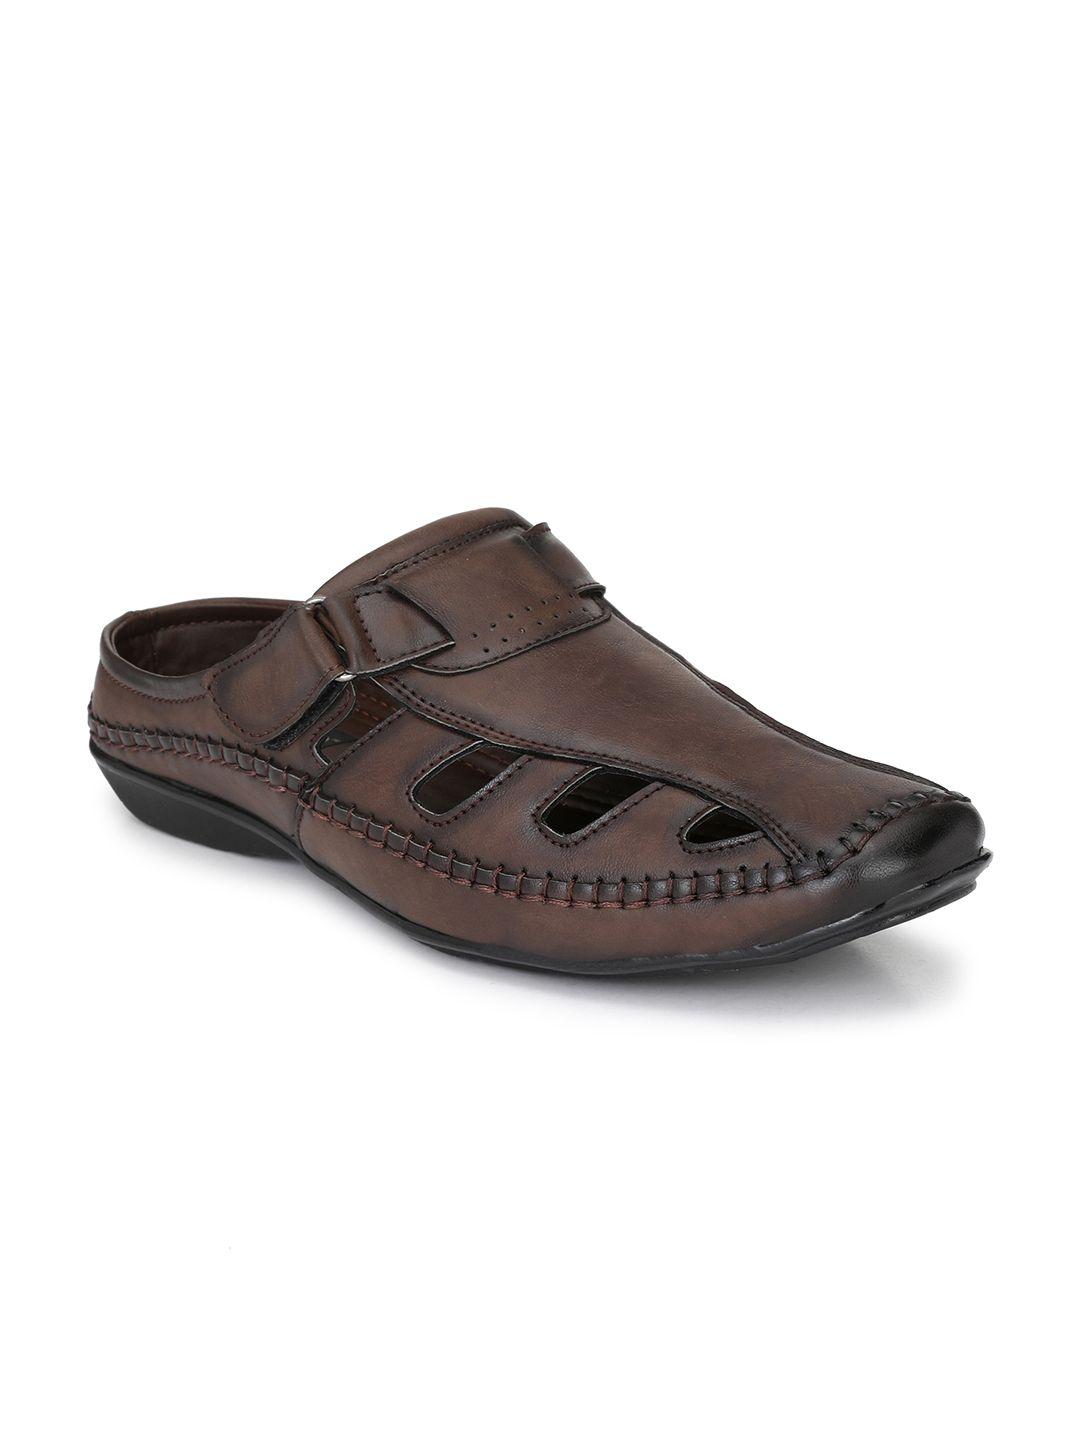 el-paso-men-brown-comfort-sandals